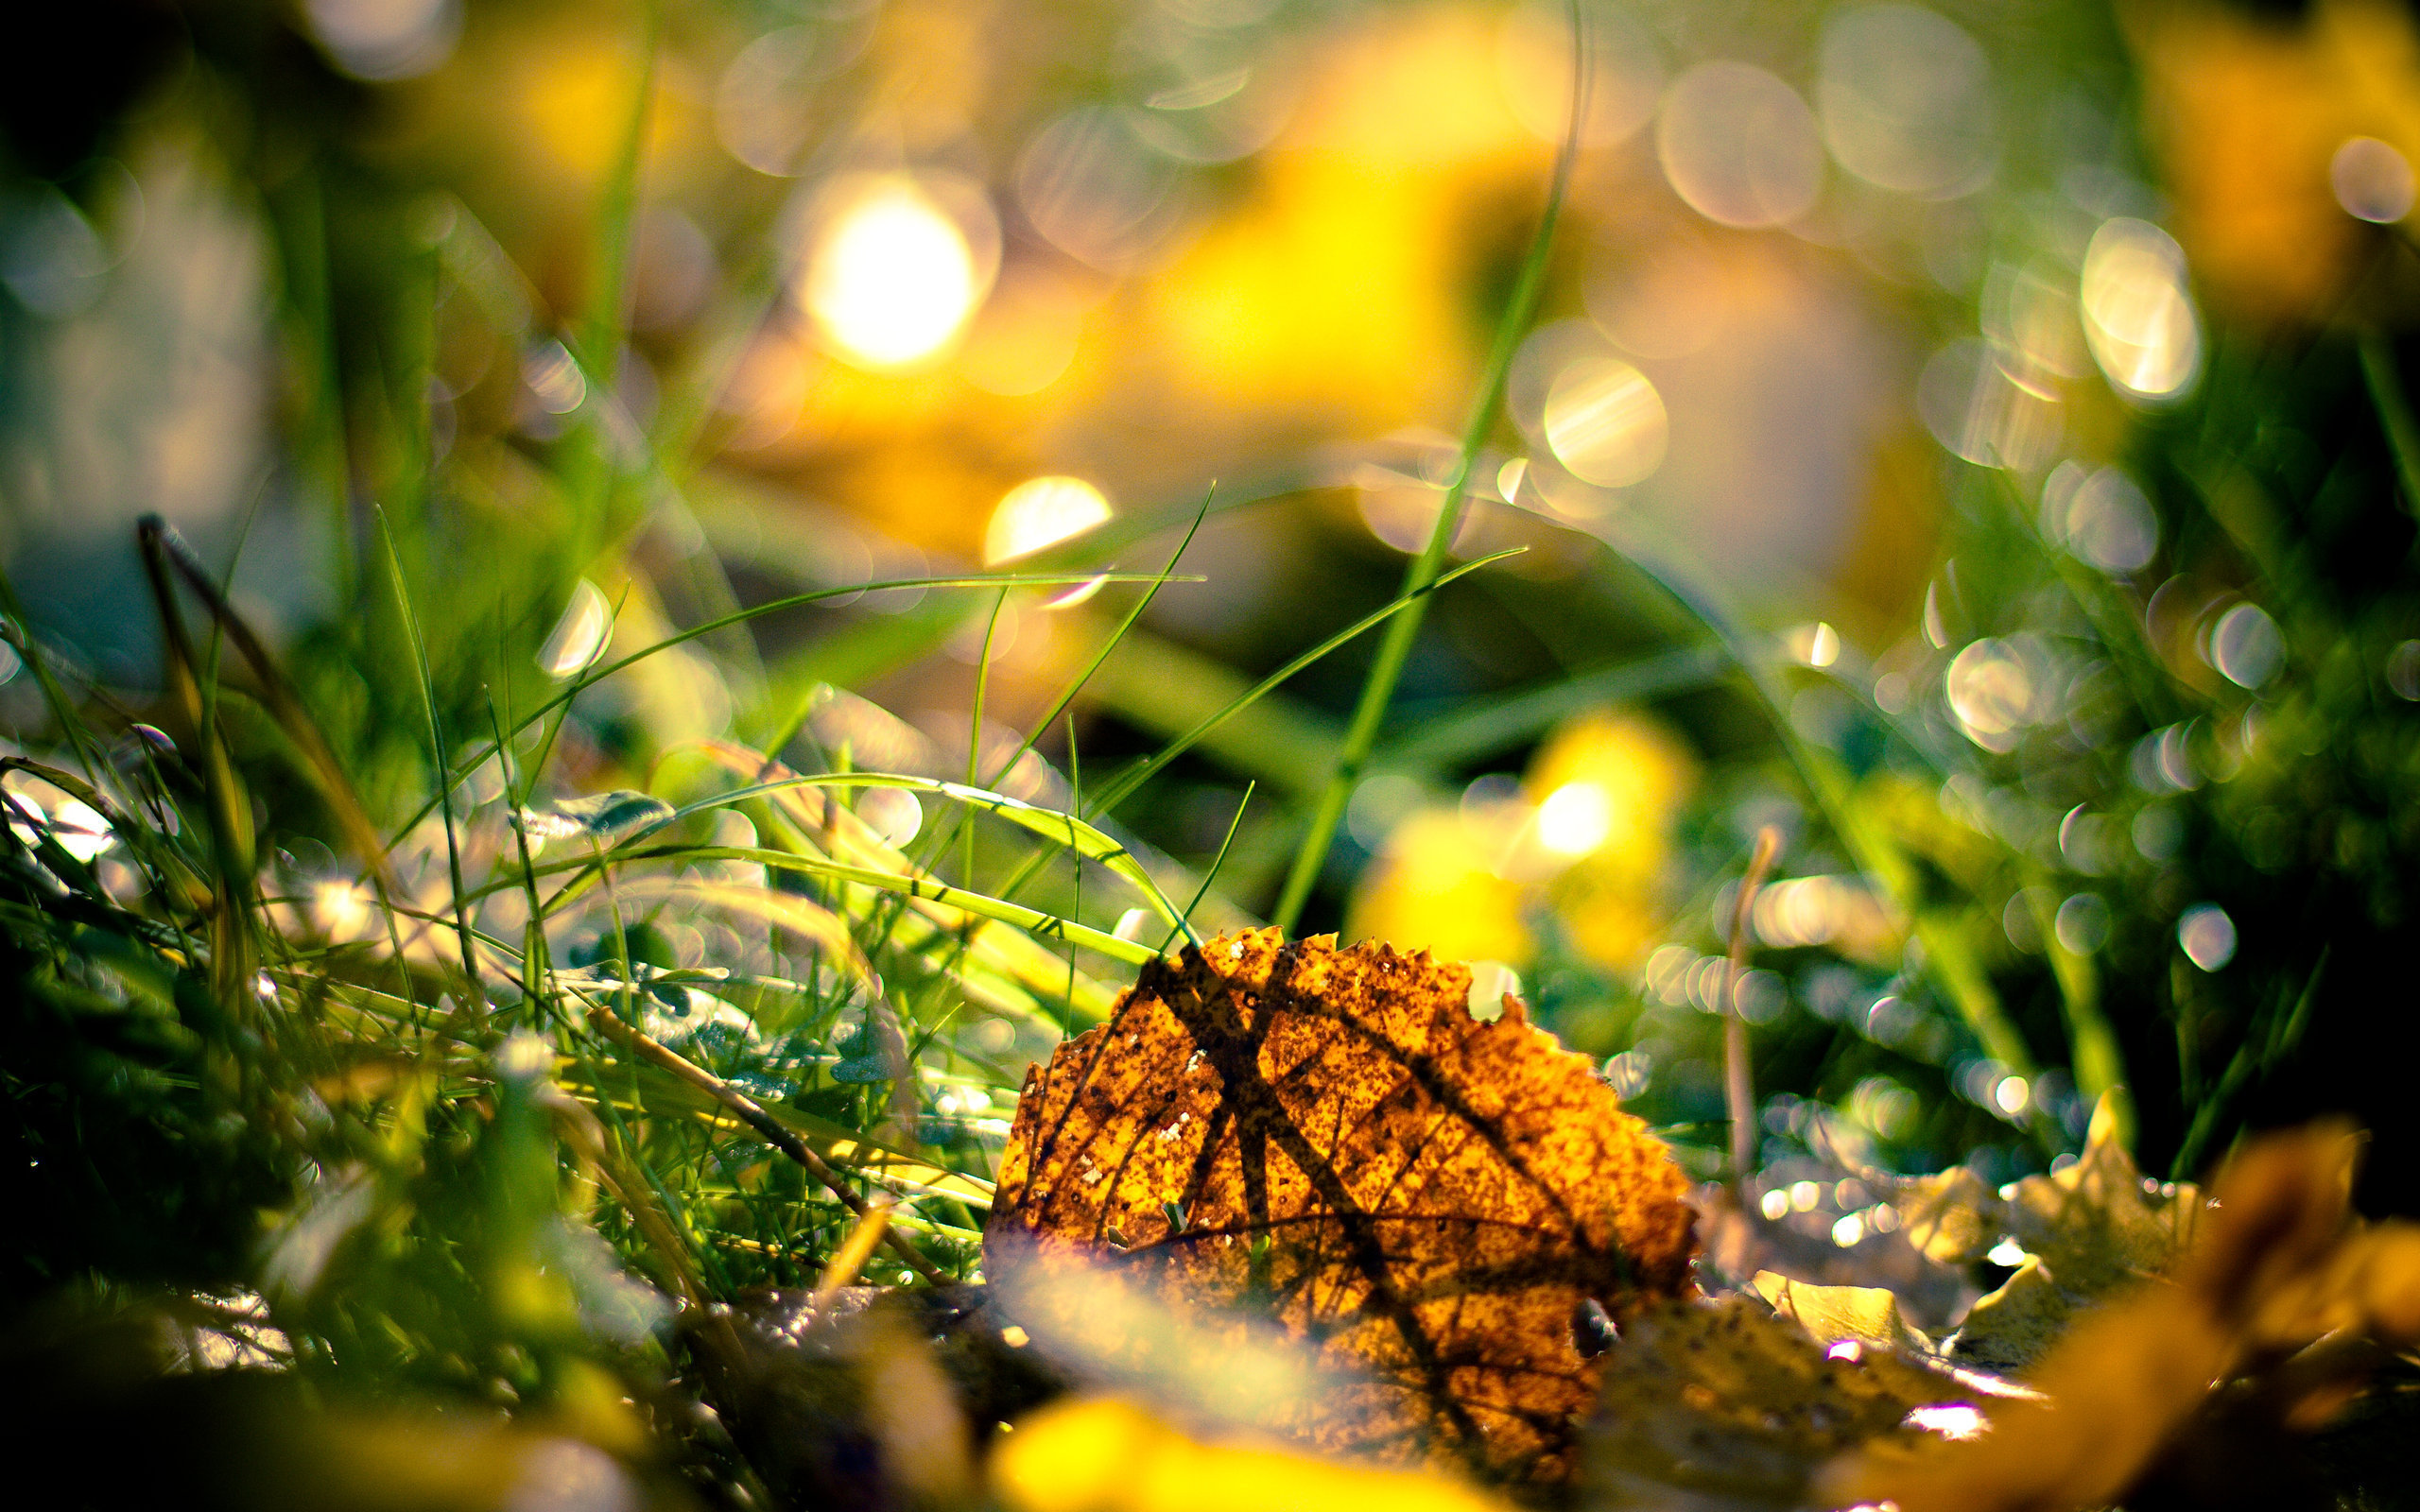 осень, макро, зеленая трава, желтые листья, природа, красивые обои, Autumn, macro, green grass, yellow leaves, nature, beautiful wallpaper